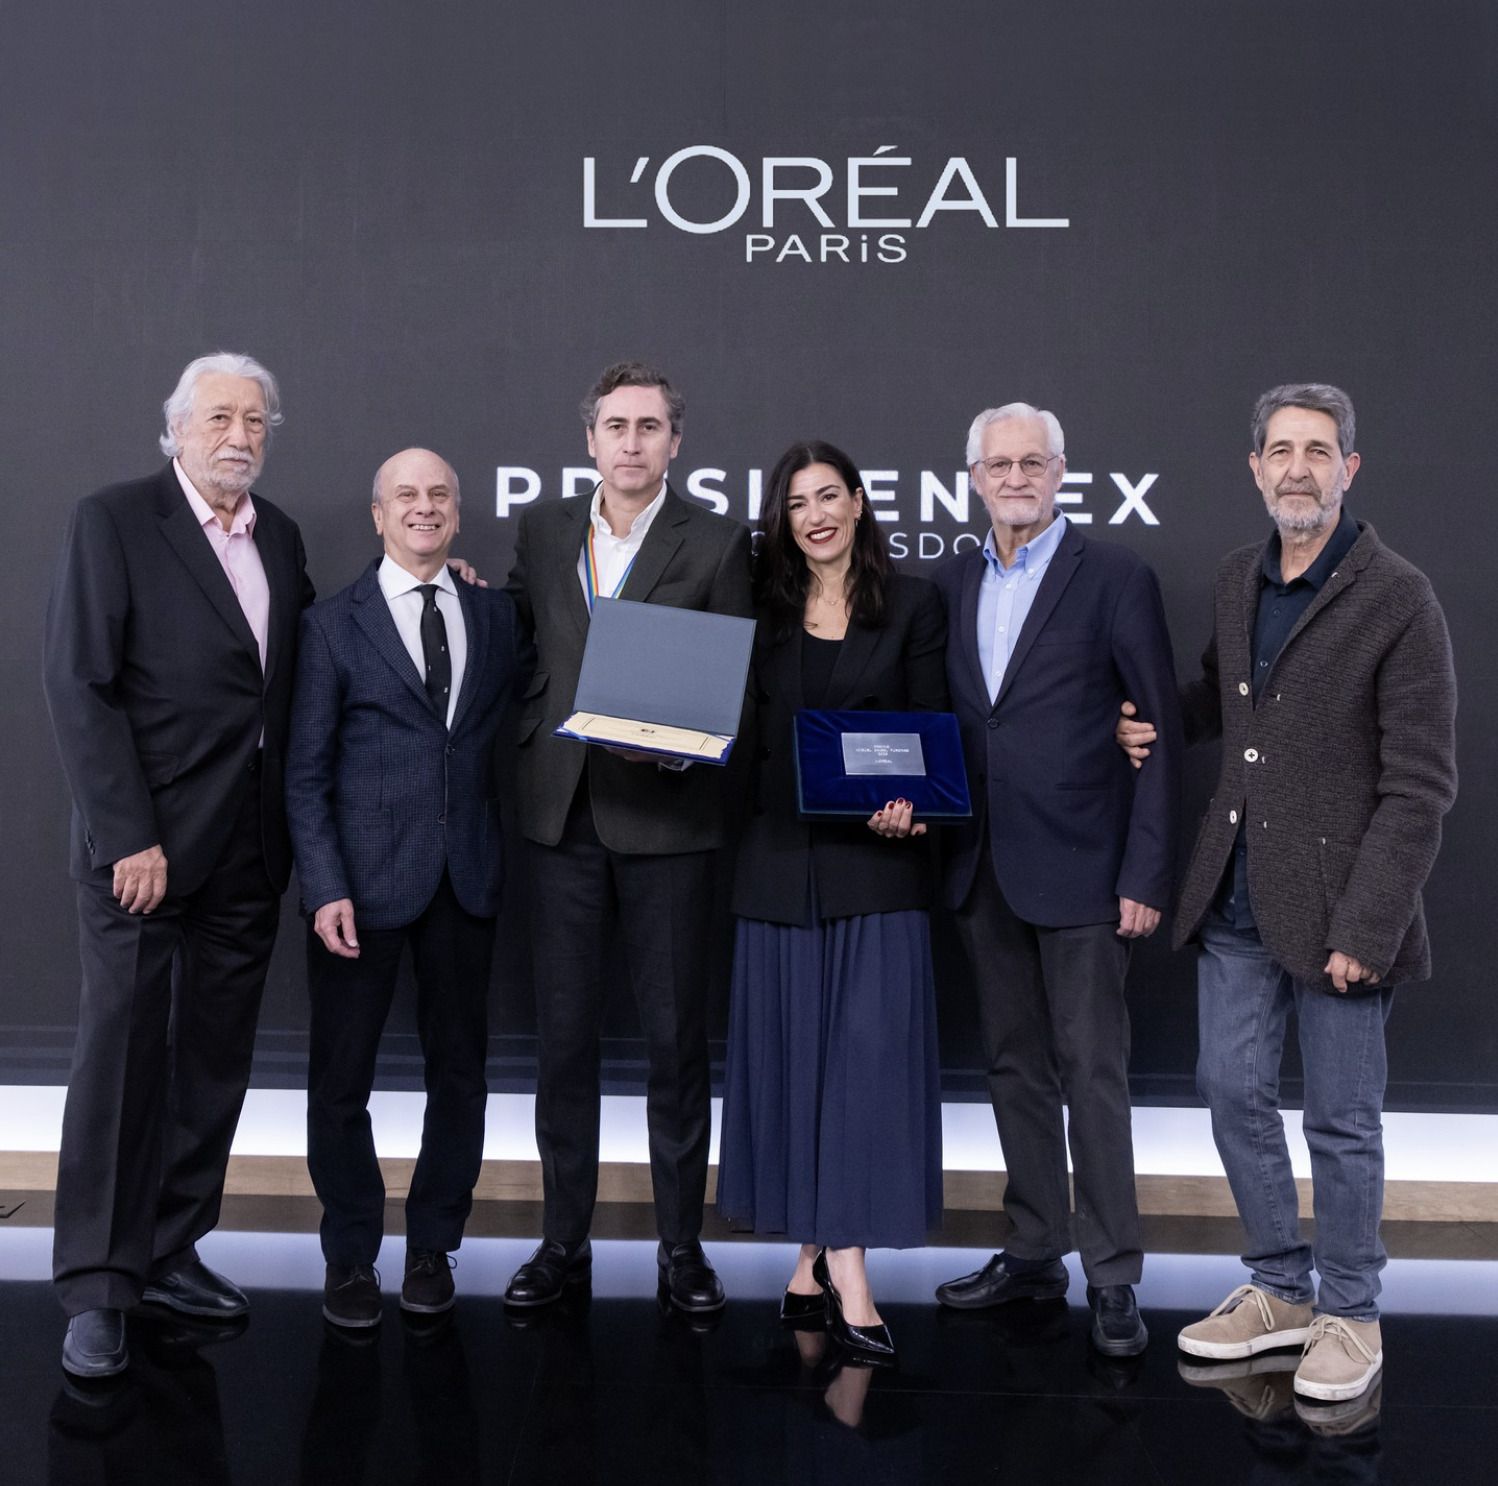 Presidentex convoca la tercera edición del Premio Miguel Ángel Furones